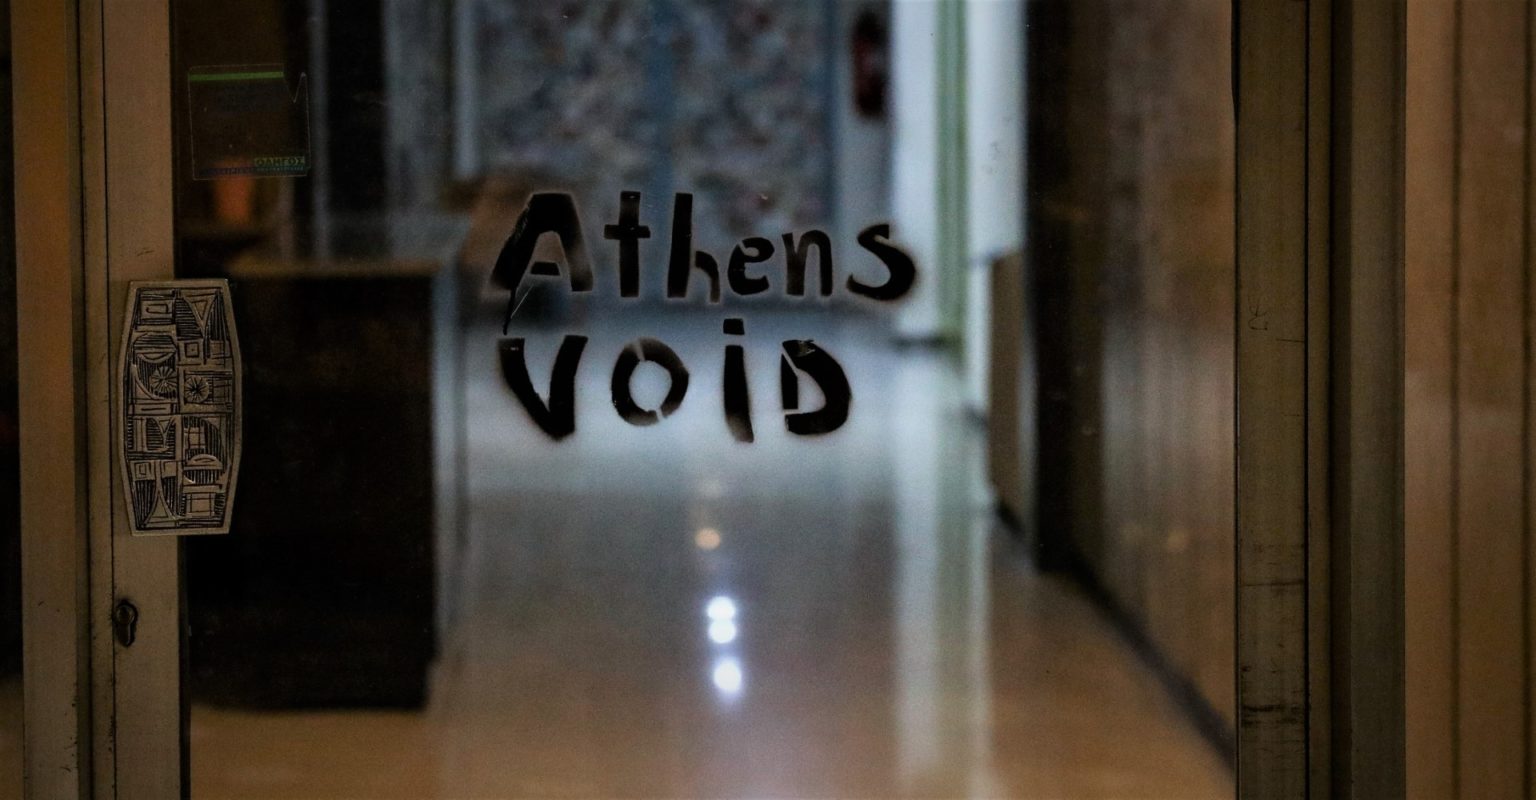 ΕΚ Athens Void